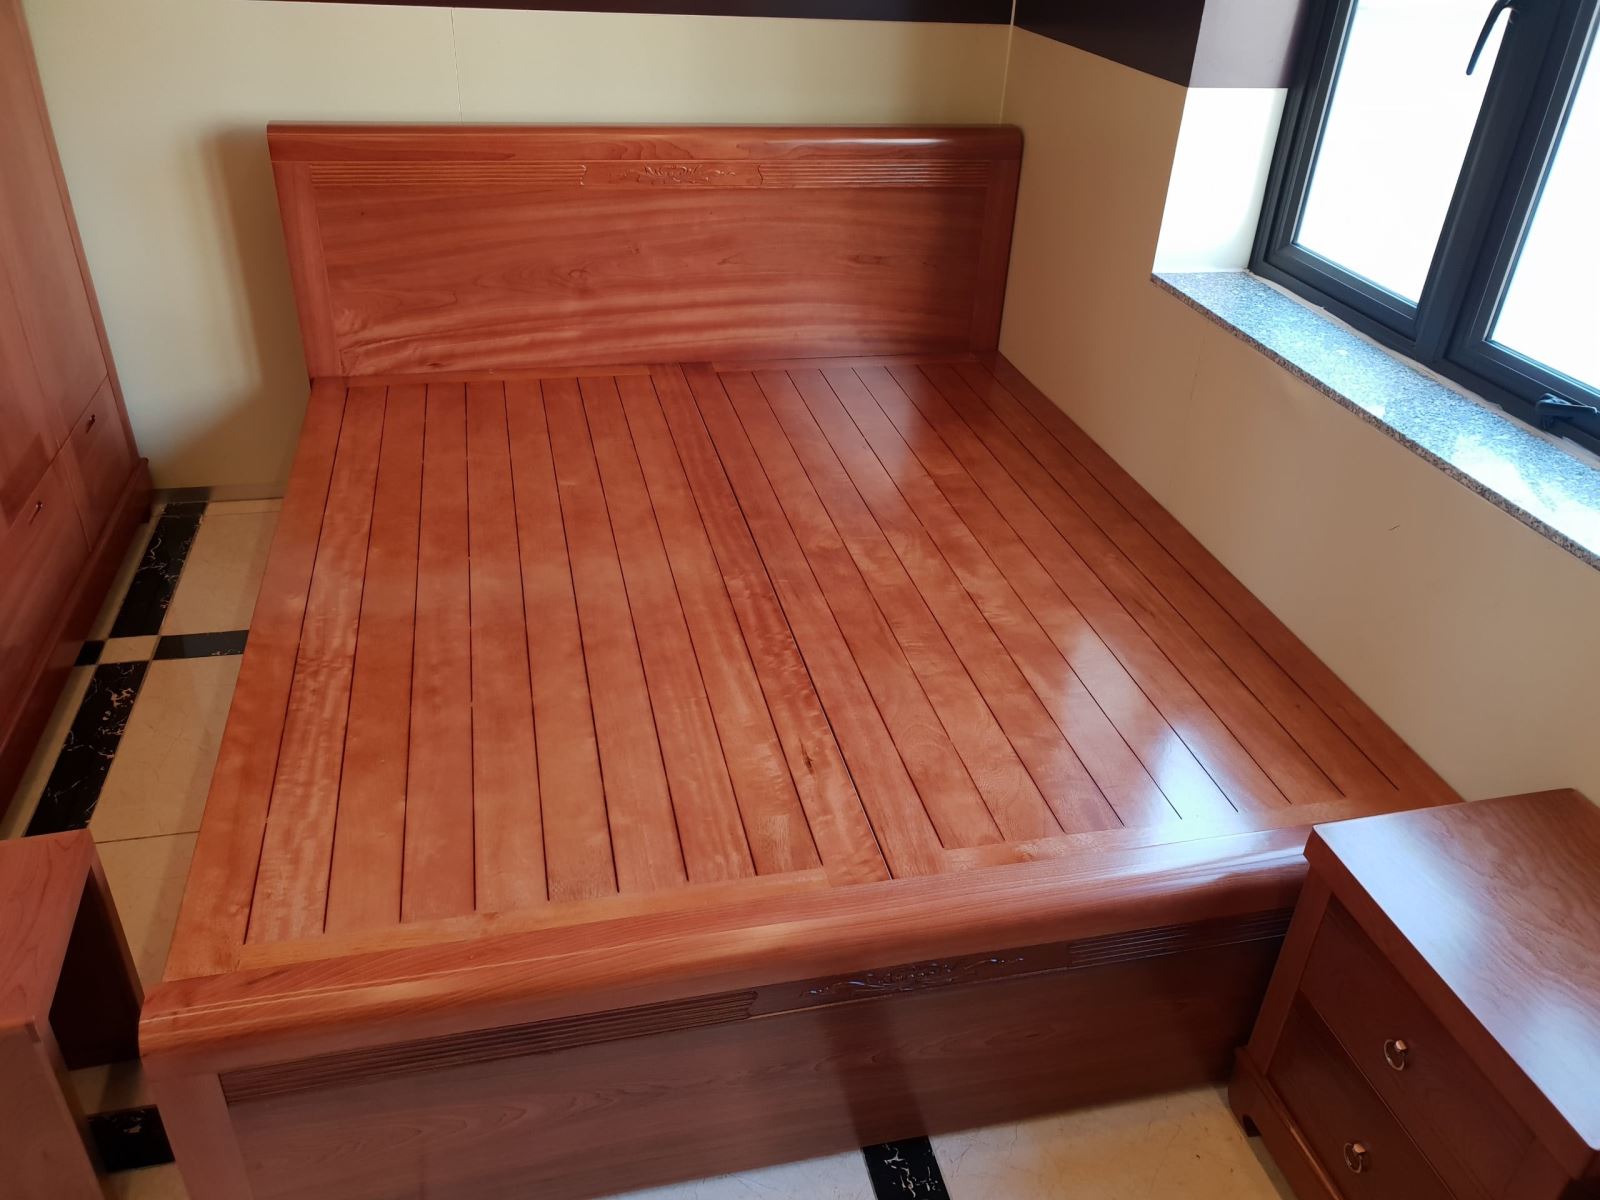 giường ngủ gỗ thịt tại quảng ninh